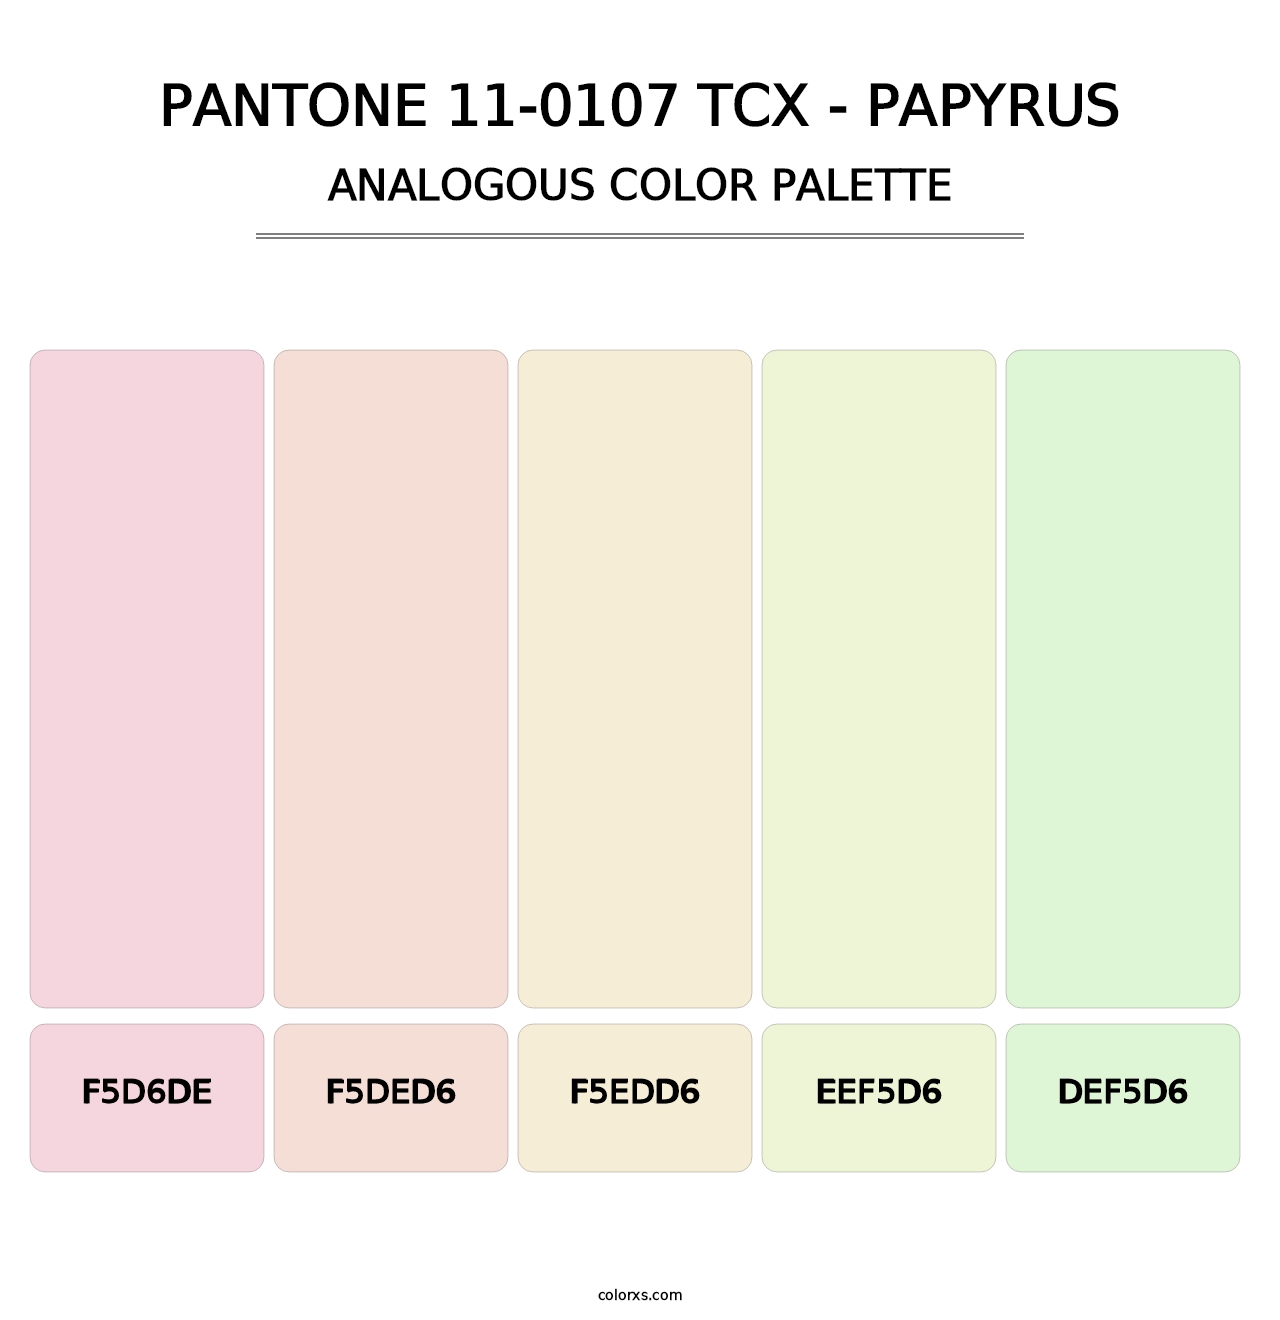 PANTONE 11-0107 TCX - Papyrus - Analogous Color Palette